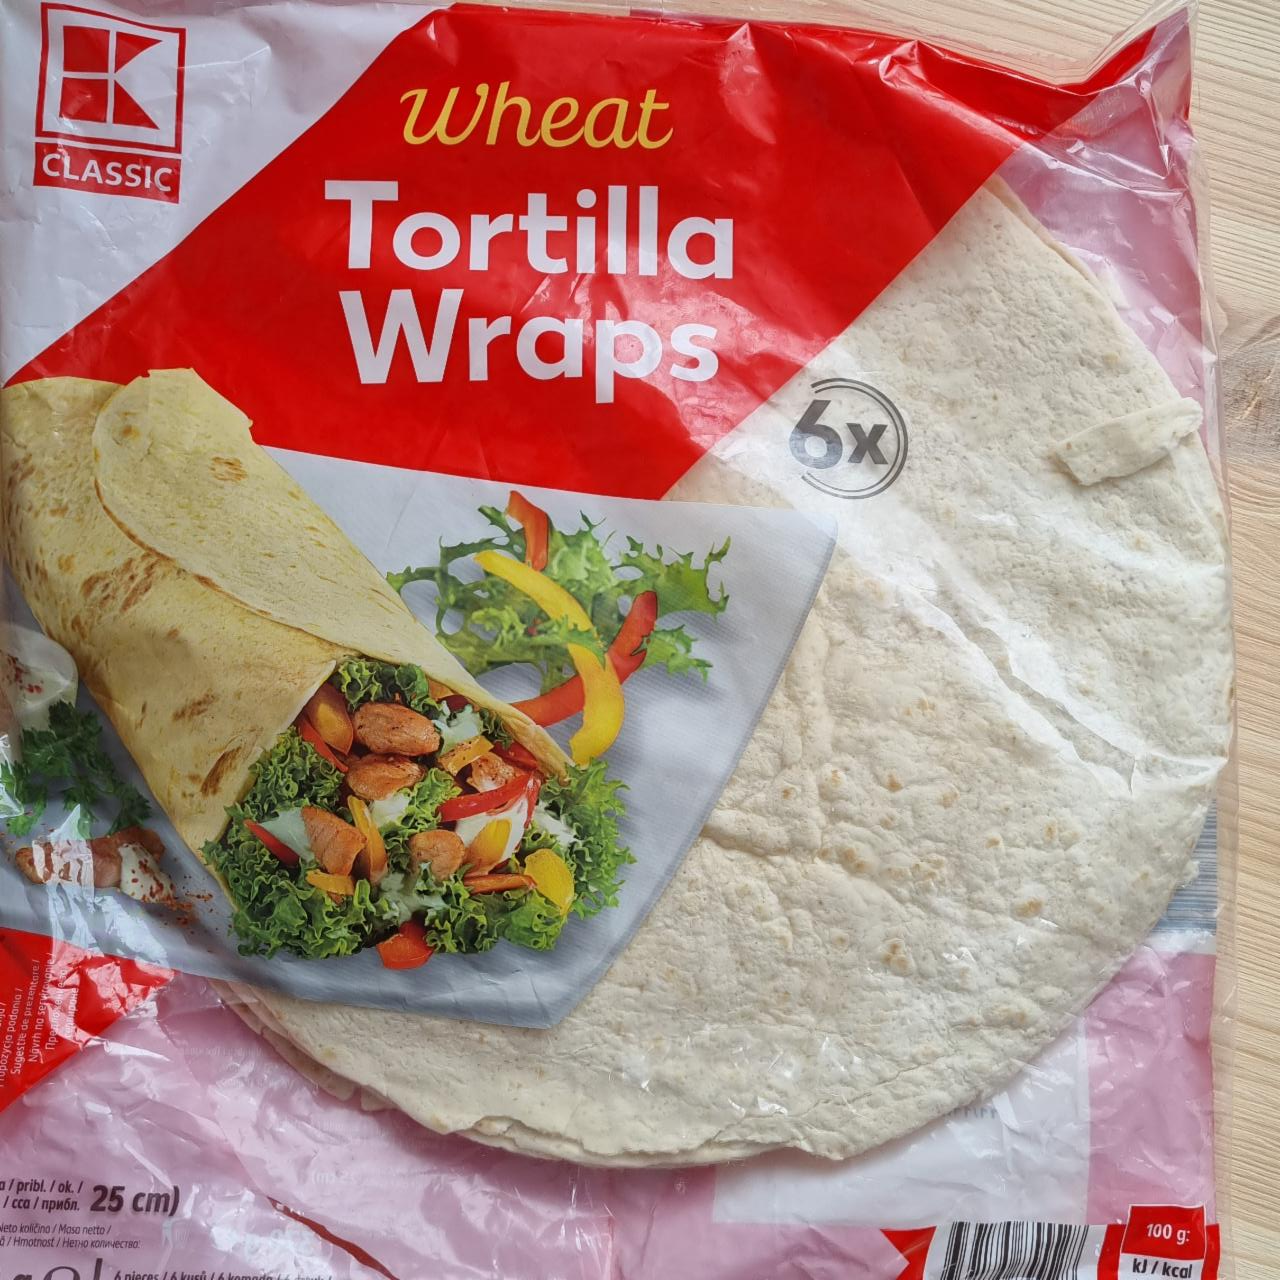 Fotografie - Wheat Tortilla Wraps K-Classic